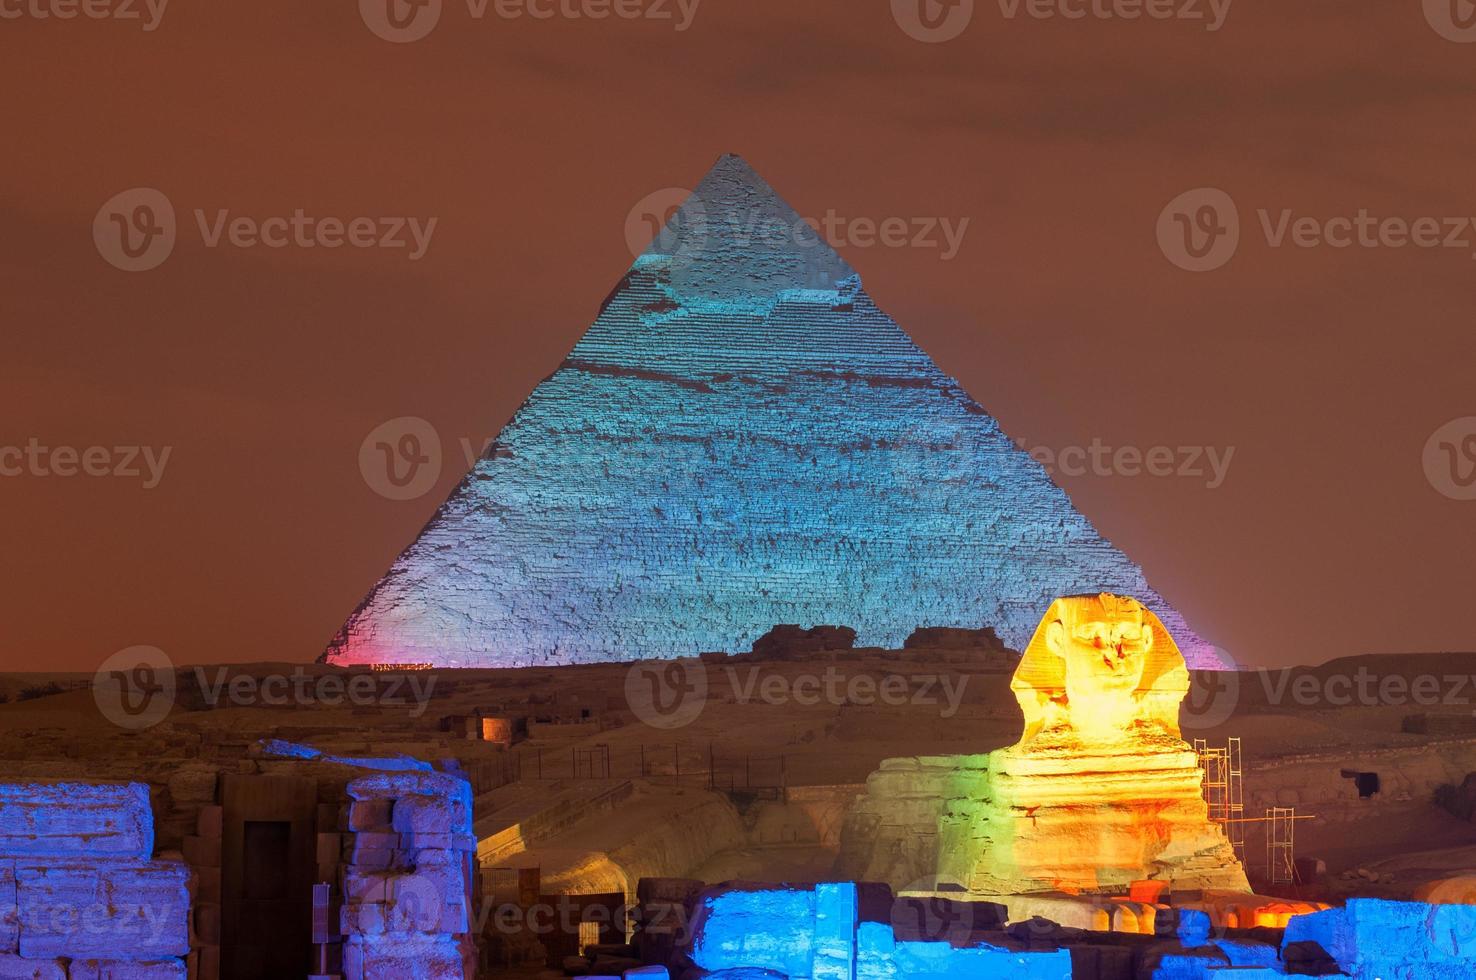 giza pyramid och sfinx ljus visa på natt - Kairo, egypten foto